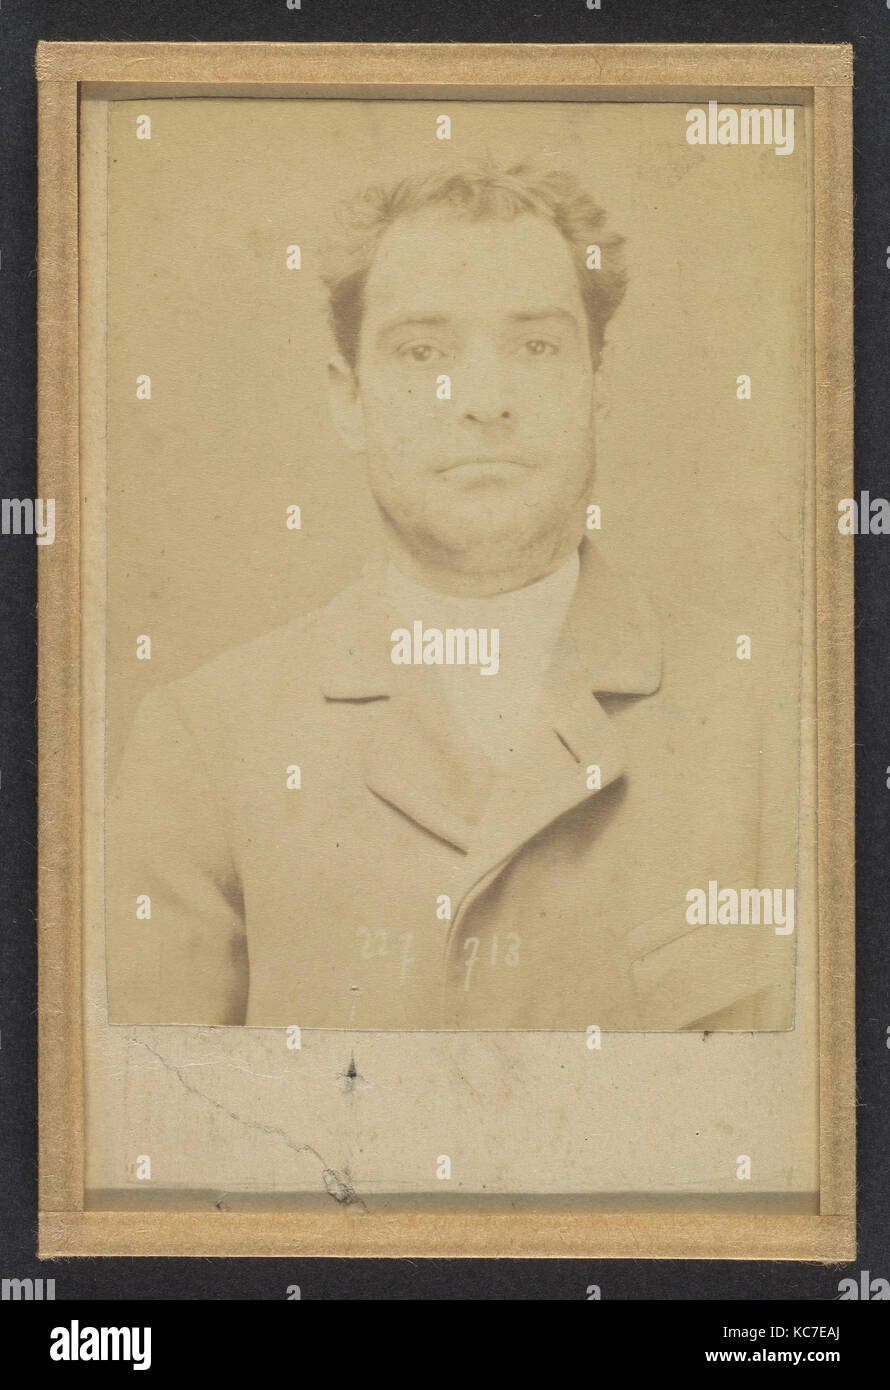 Dauriac. Henri, Georges. 36 ans, né à Memphis (USA). Agent d'affaires. Extortion de fonds. 22/12/94., Alphonse Bertillon, 1894 Stock Photo